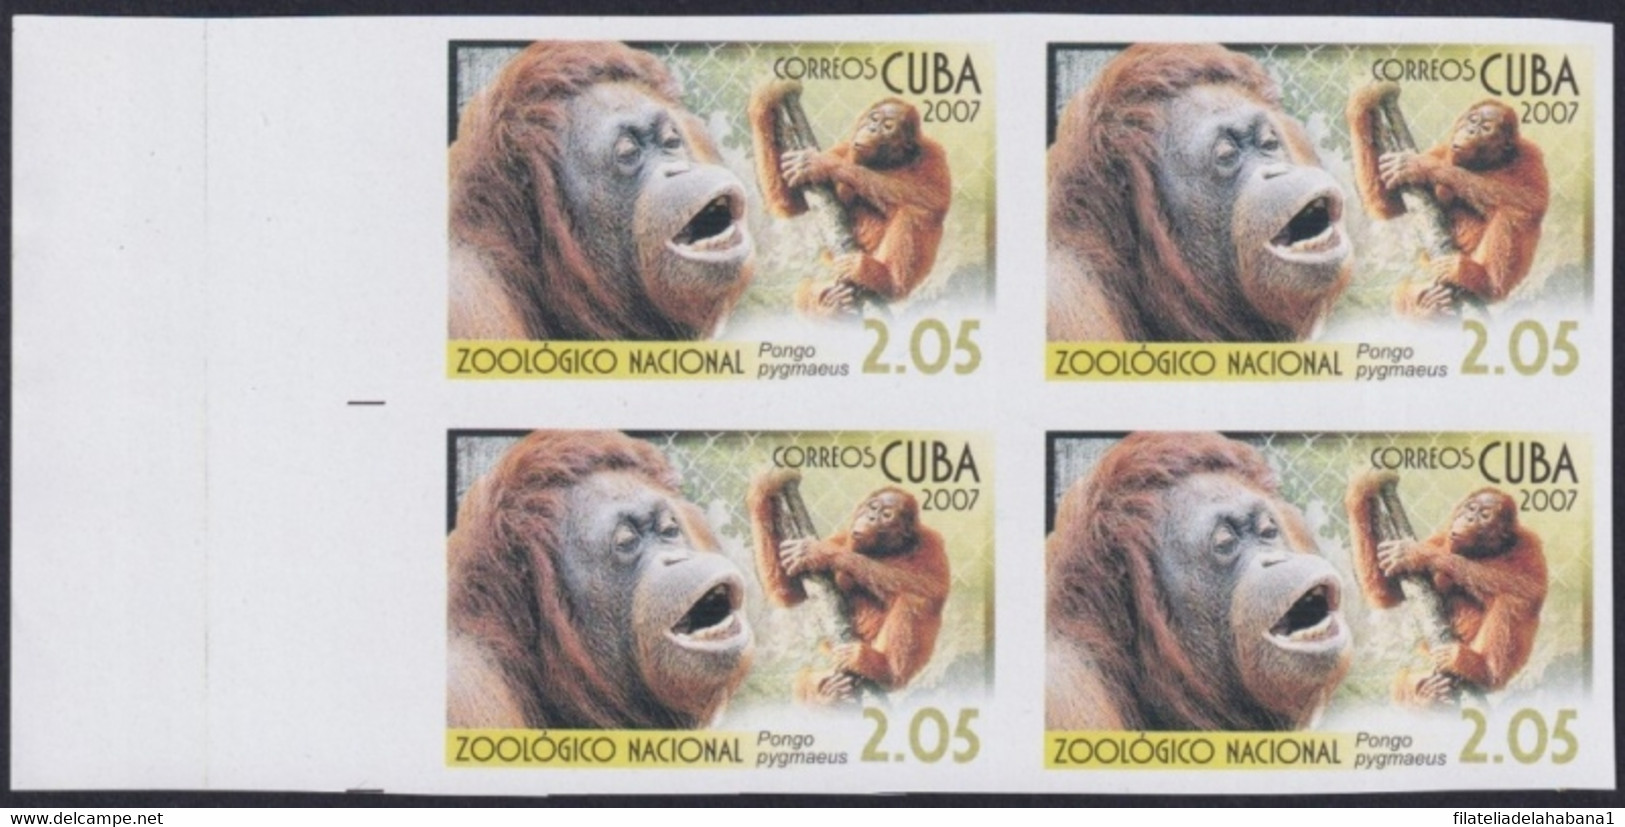 2007.707 CUBA 2007 2.05$ MNH IMPERFORATED PROOF VIRGEN KEY FAUNA ZOO MONKEY MONO ORANGUTAN. - Sin Dentar, Pruebas De Impresión Y Variedades